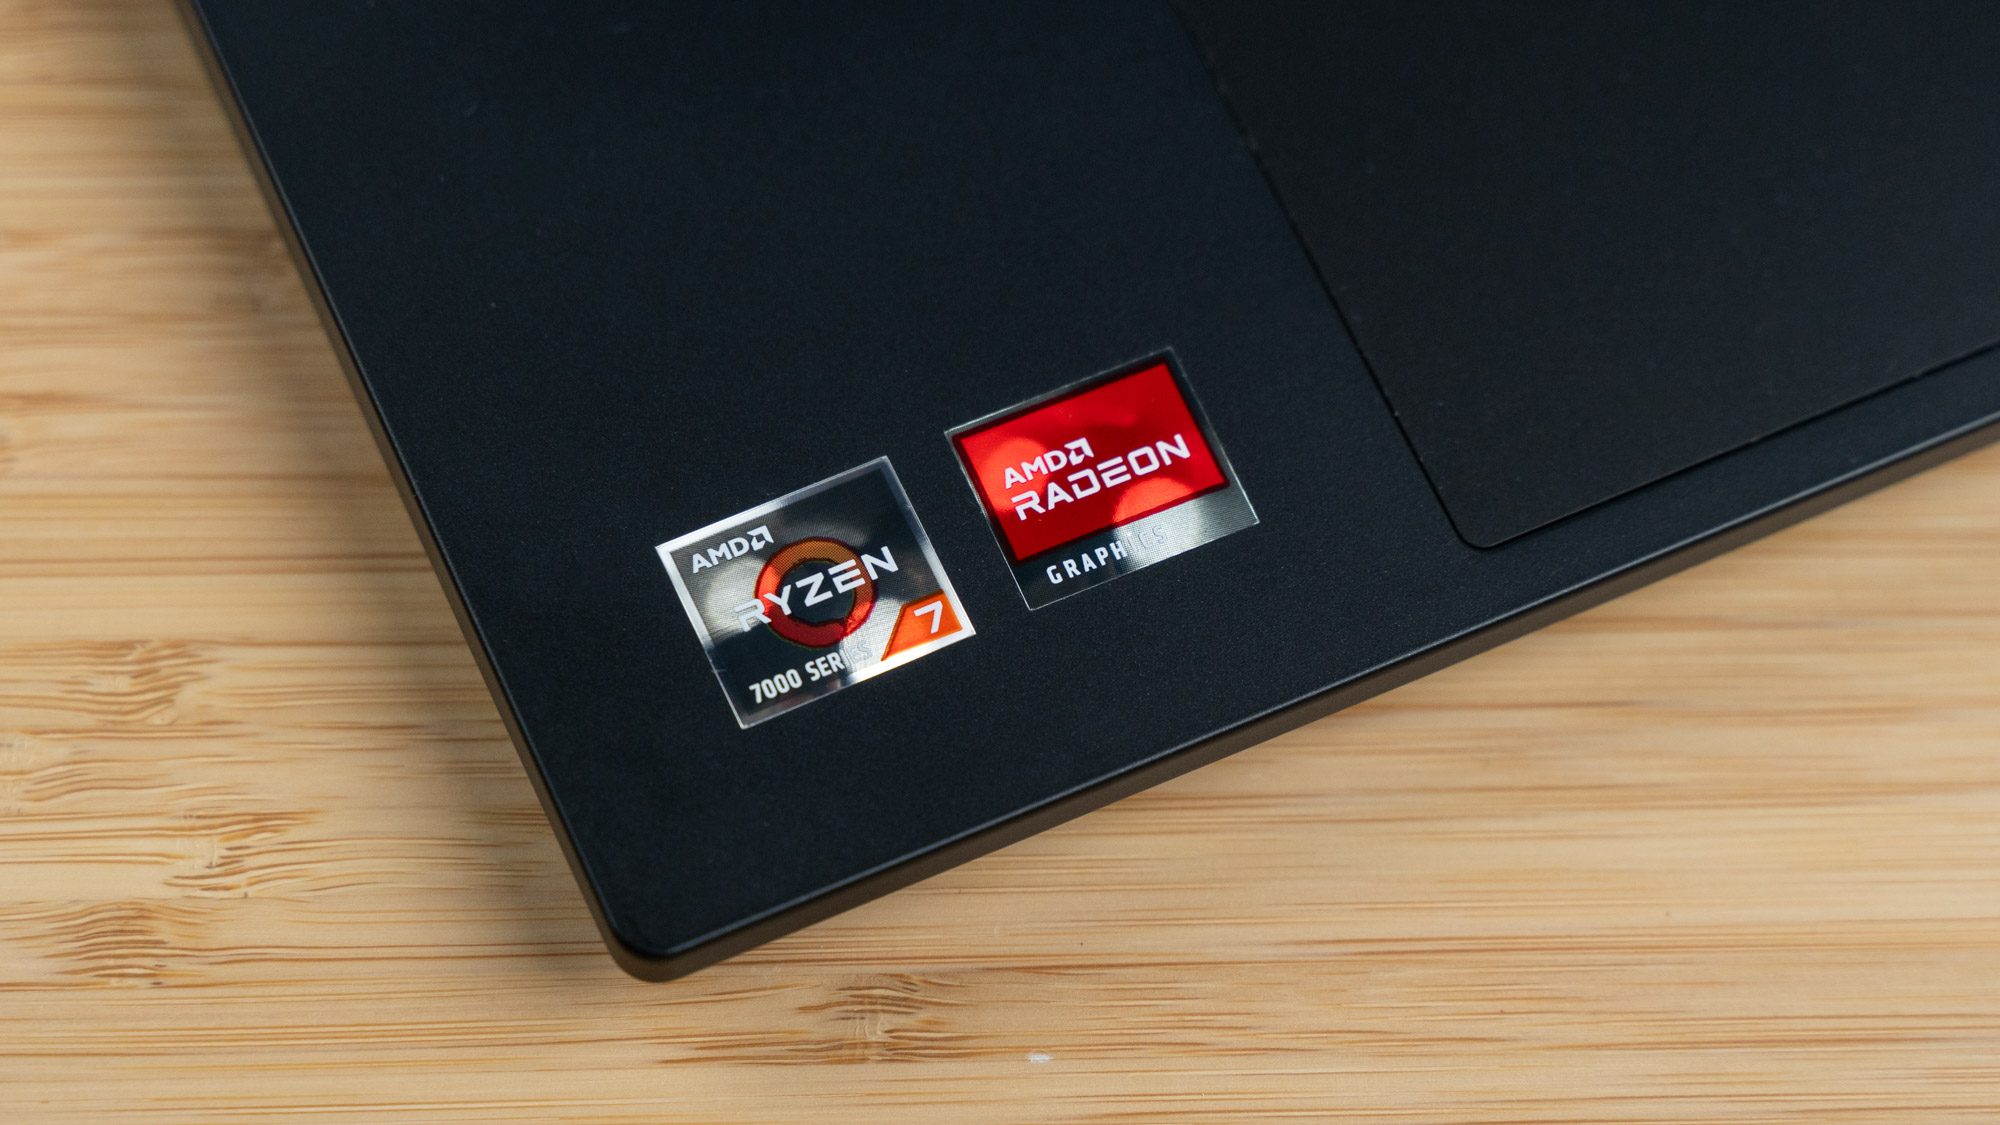 AMD-Sticker für Ryzen-CPU.